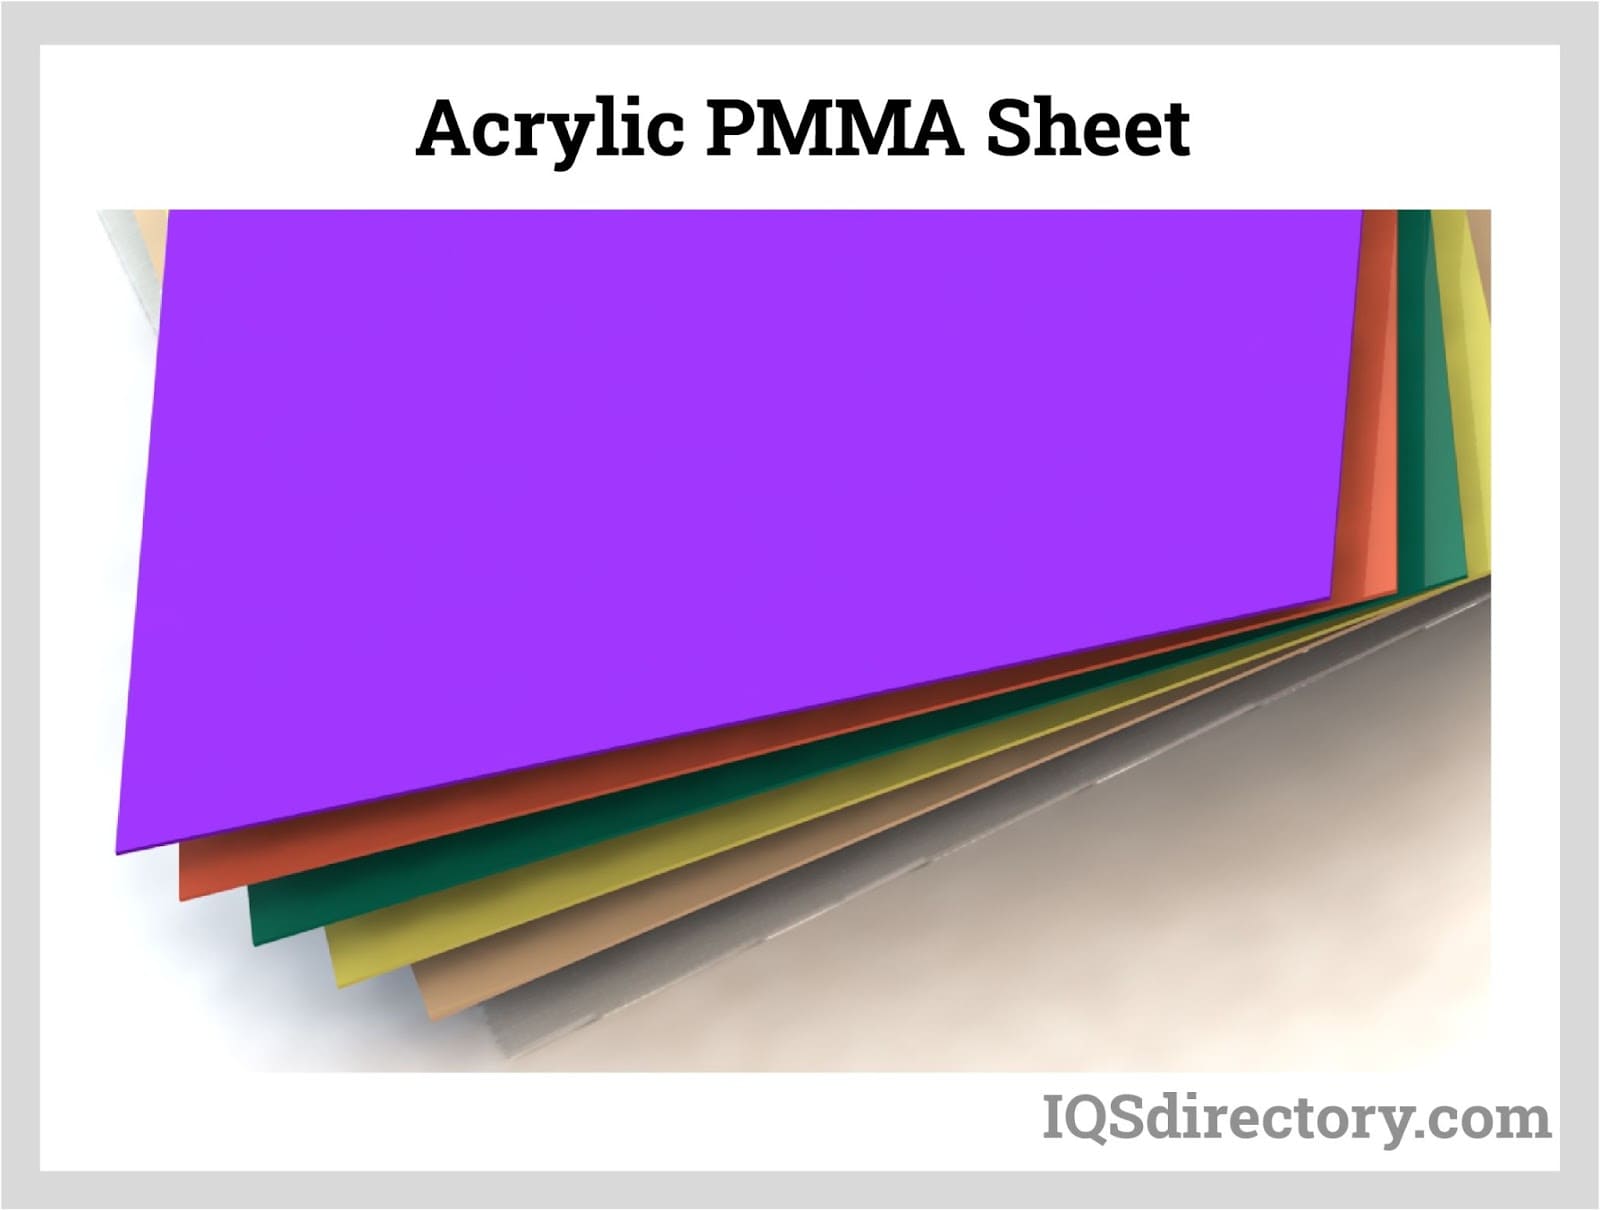  Acrylic PMMA Sheet